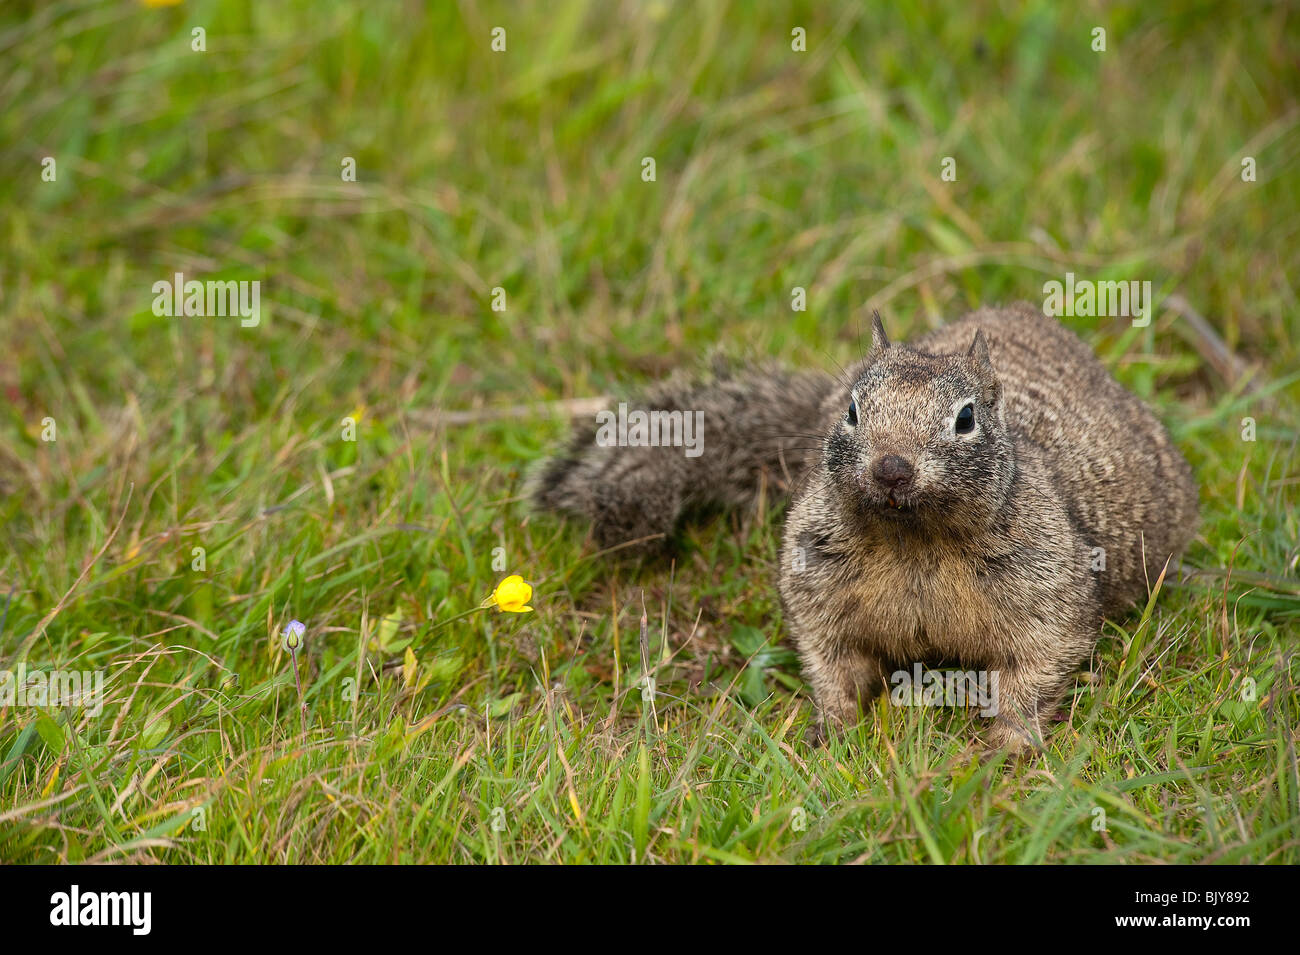 California Ground squirrel (Spermophilus beecheyi) Stock Photo